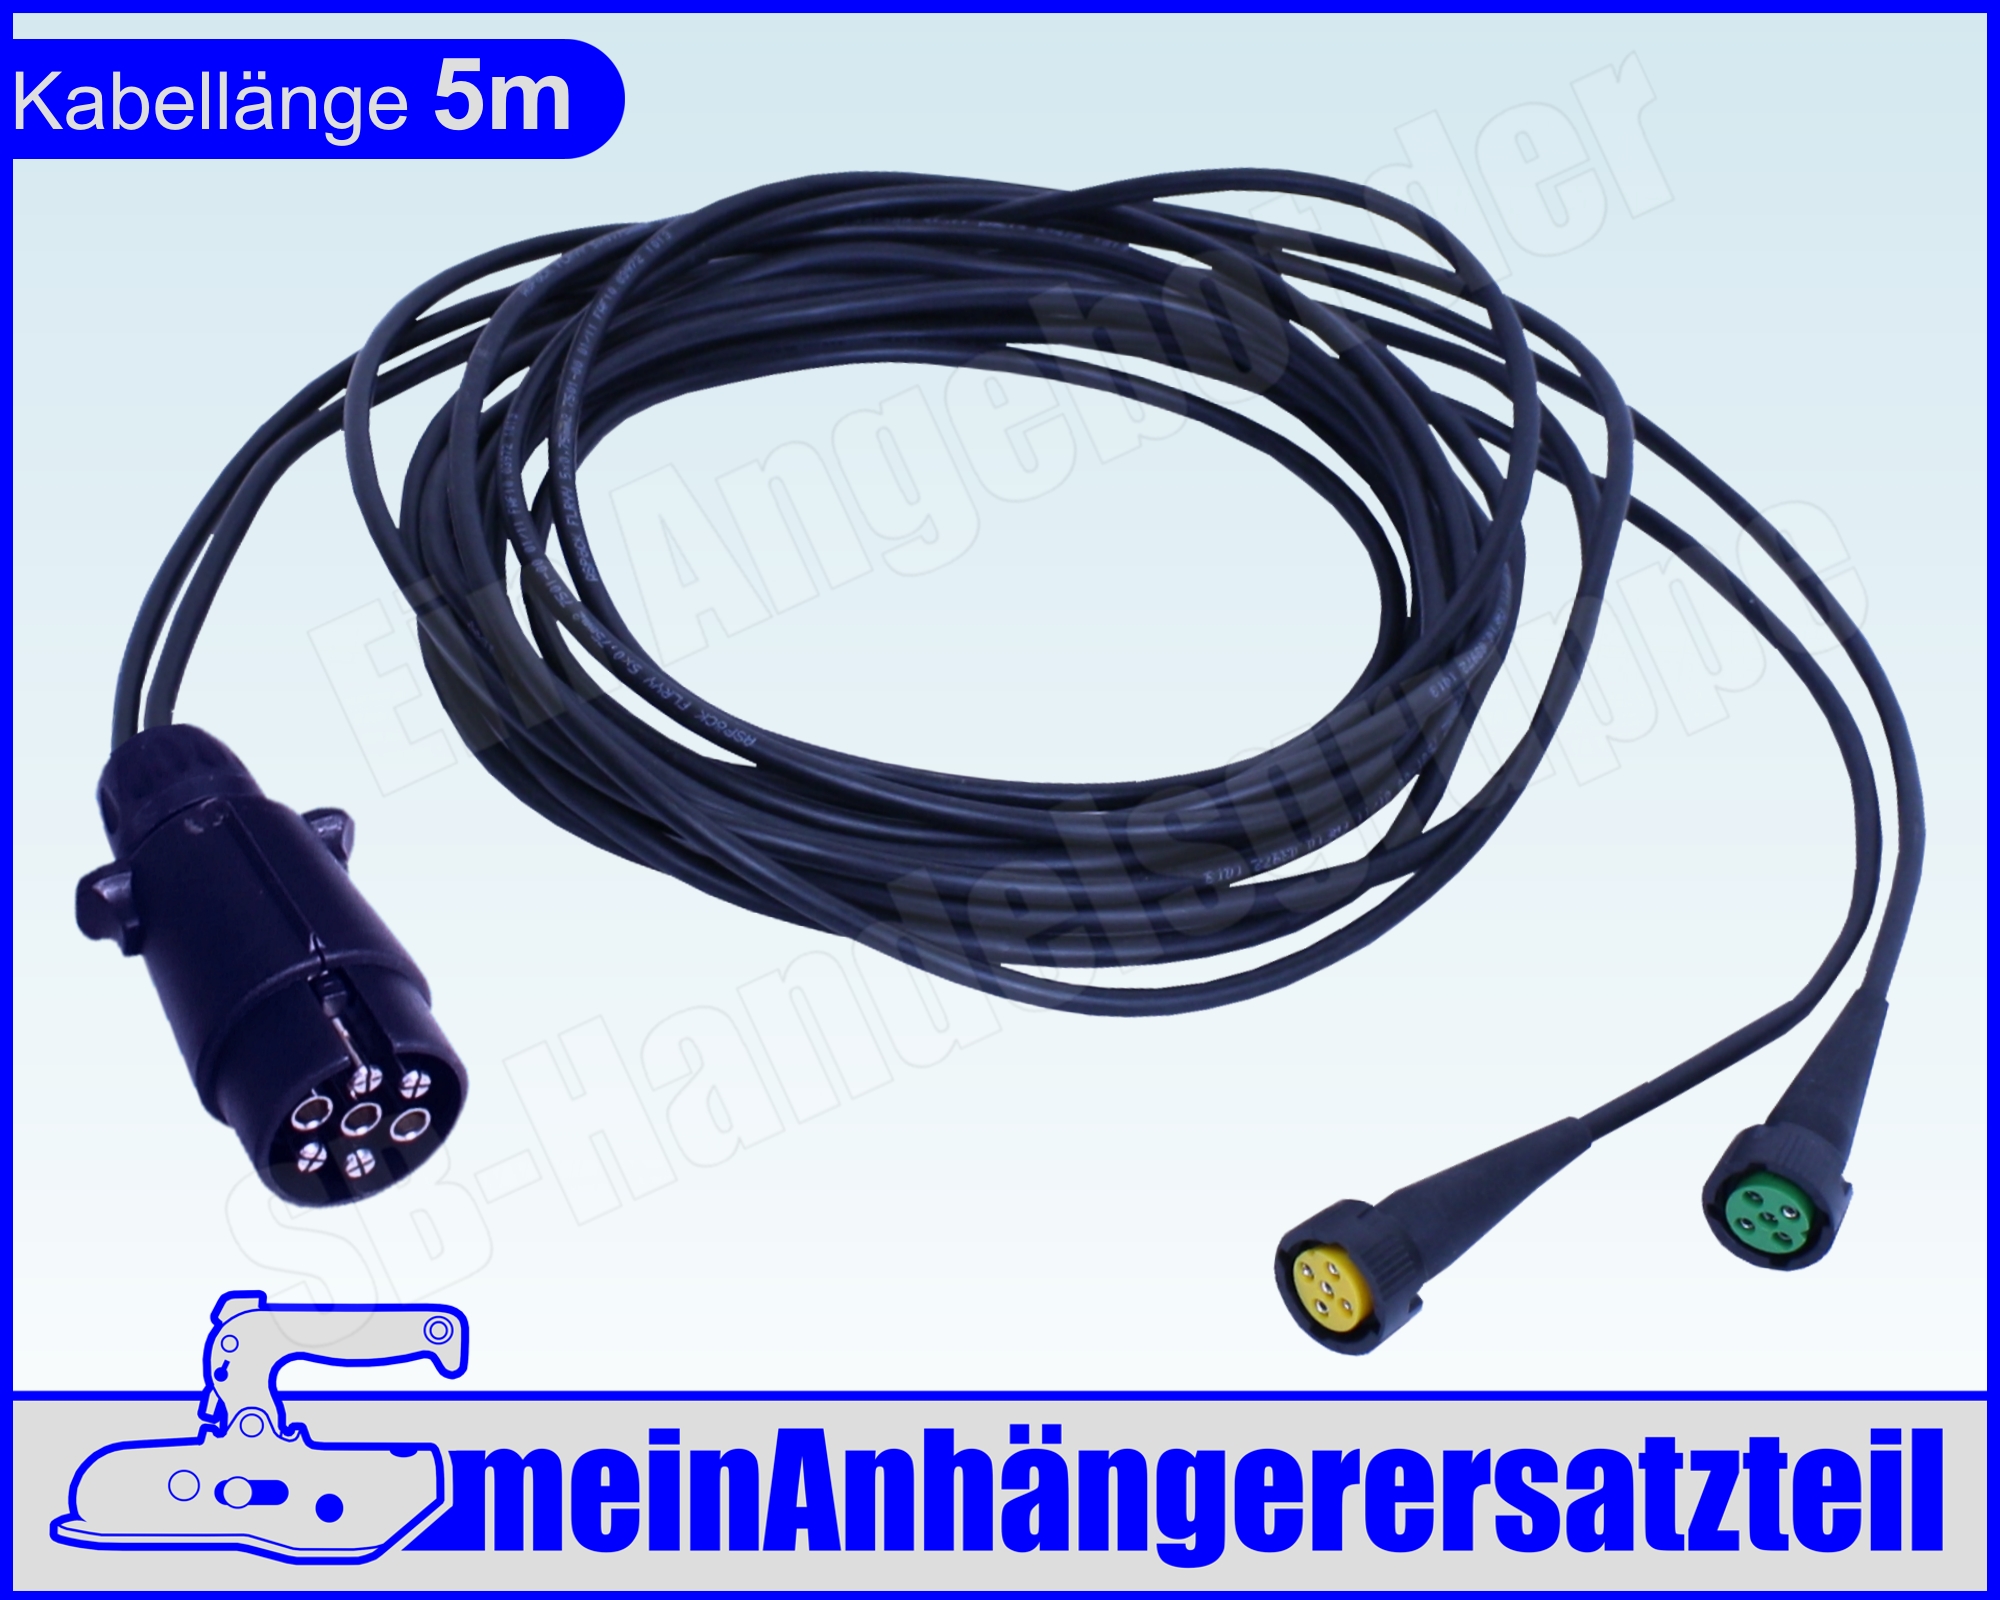 Aspöck Kabelsatz Anhängerkabel mit Bajonettanschluss 58-2008-017 13pol 4m